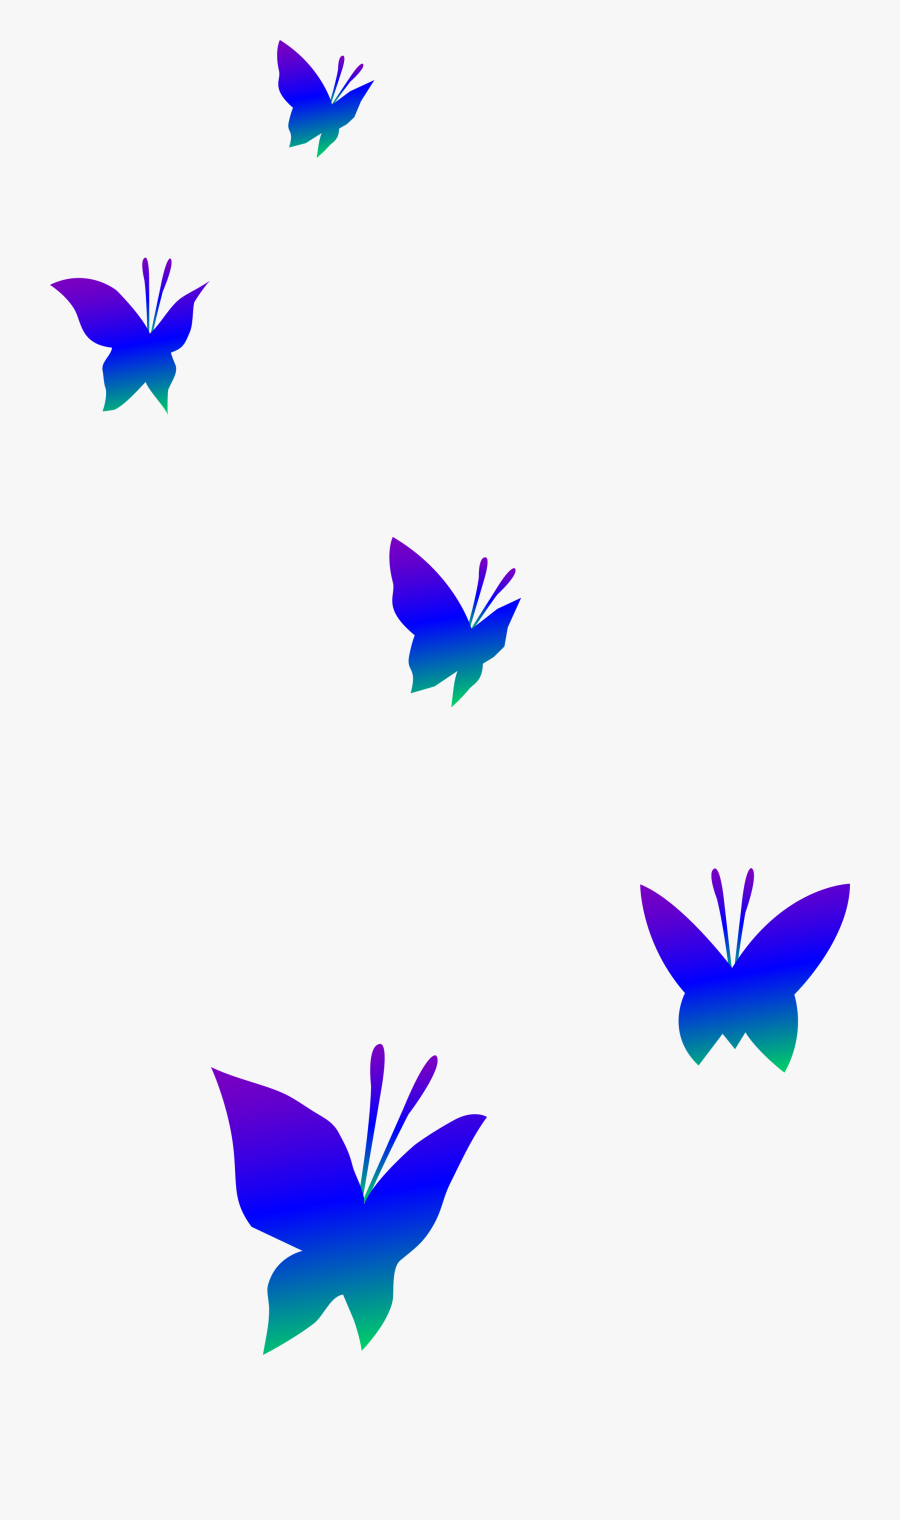 Purple Blue And Green Butterflies - Transparent Background Butterfly Clipart, Transparent Clipart